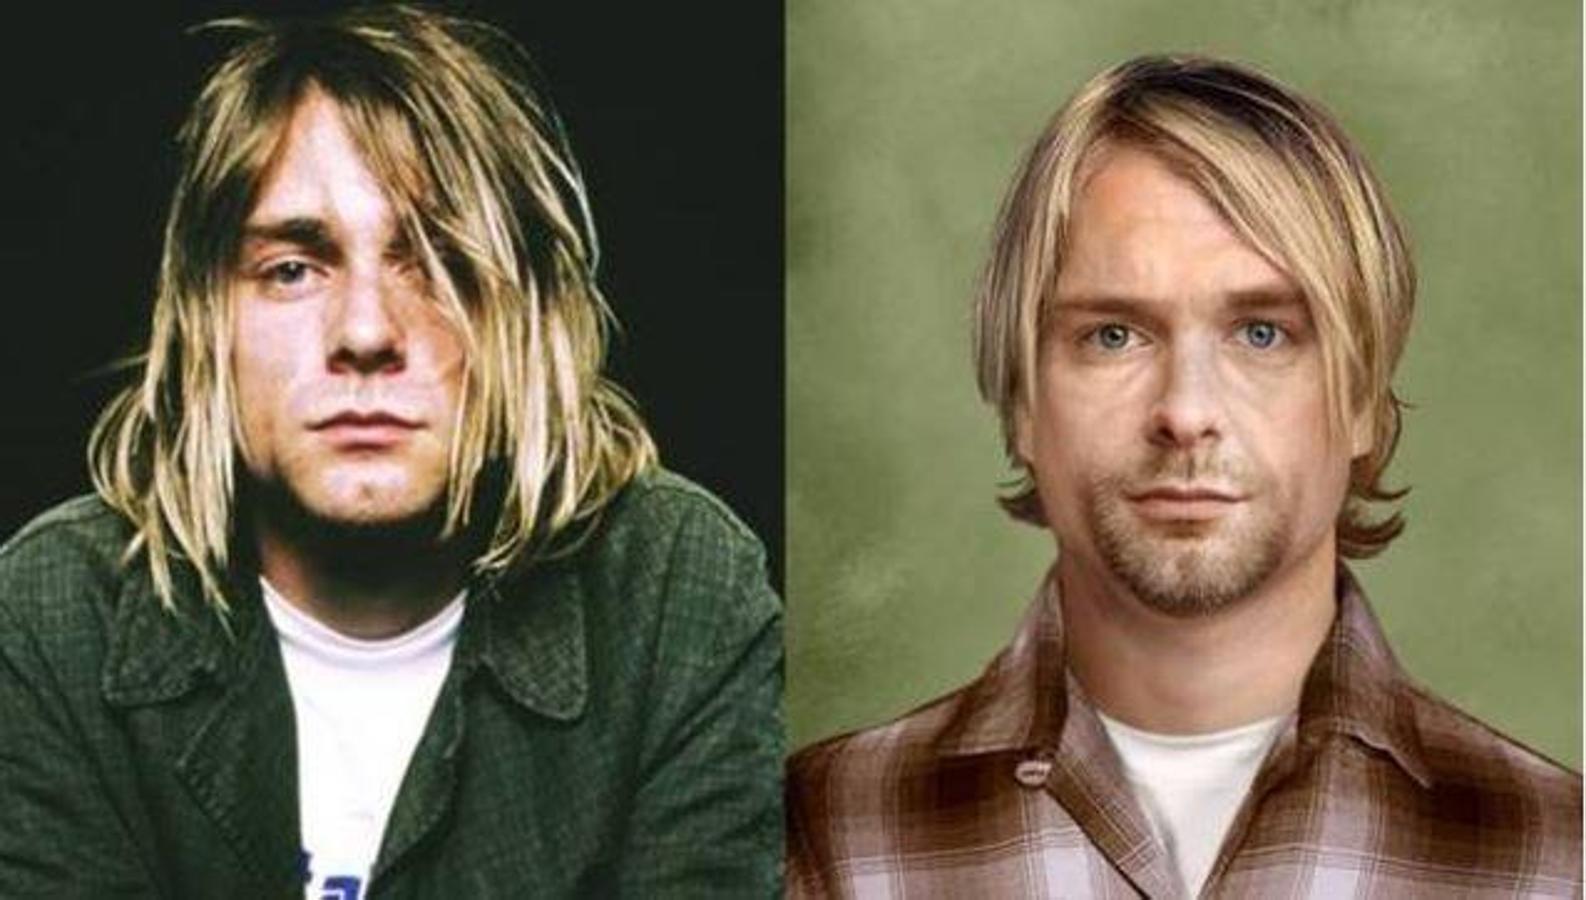 Kurt Cobain. Compositor y cantante de rock estadounidense, fundador y principal miembro de la banda Nirvana. El 8 de abril de 1994, Cobain fue encontrado muerto en su casa en Seattle, víctima de lo que oficialmente fue afirmado un suicidio por una herida autoinfligida en la cabeza, el 5 de abril. Tenía 27 años.